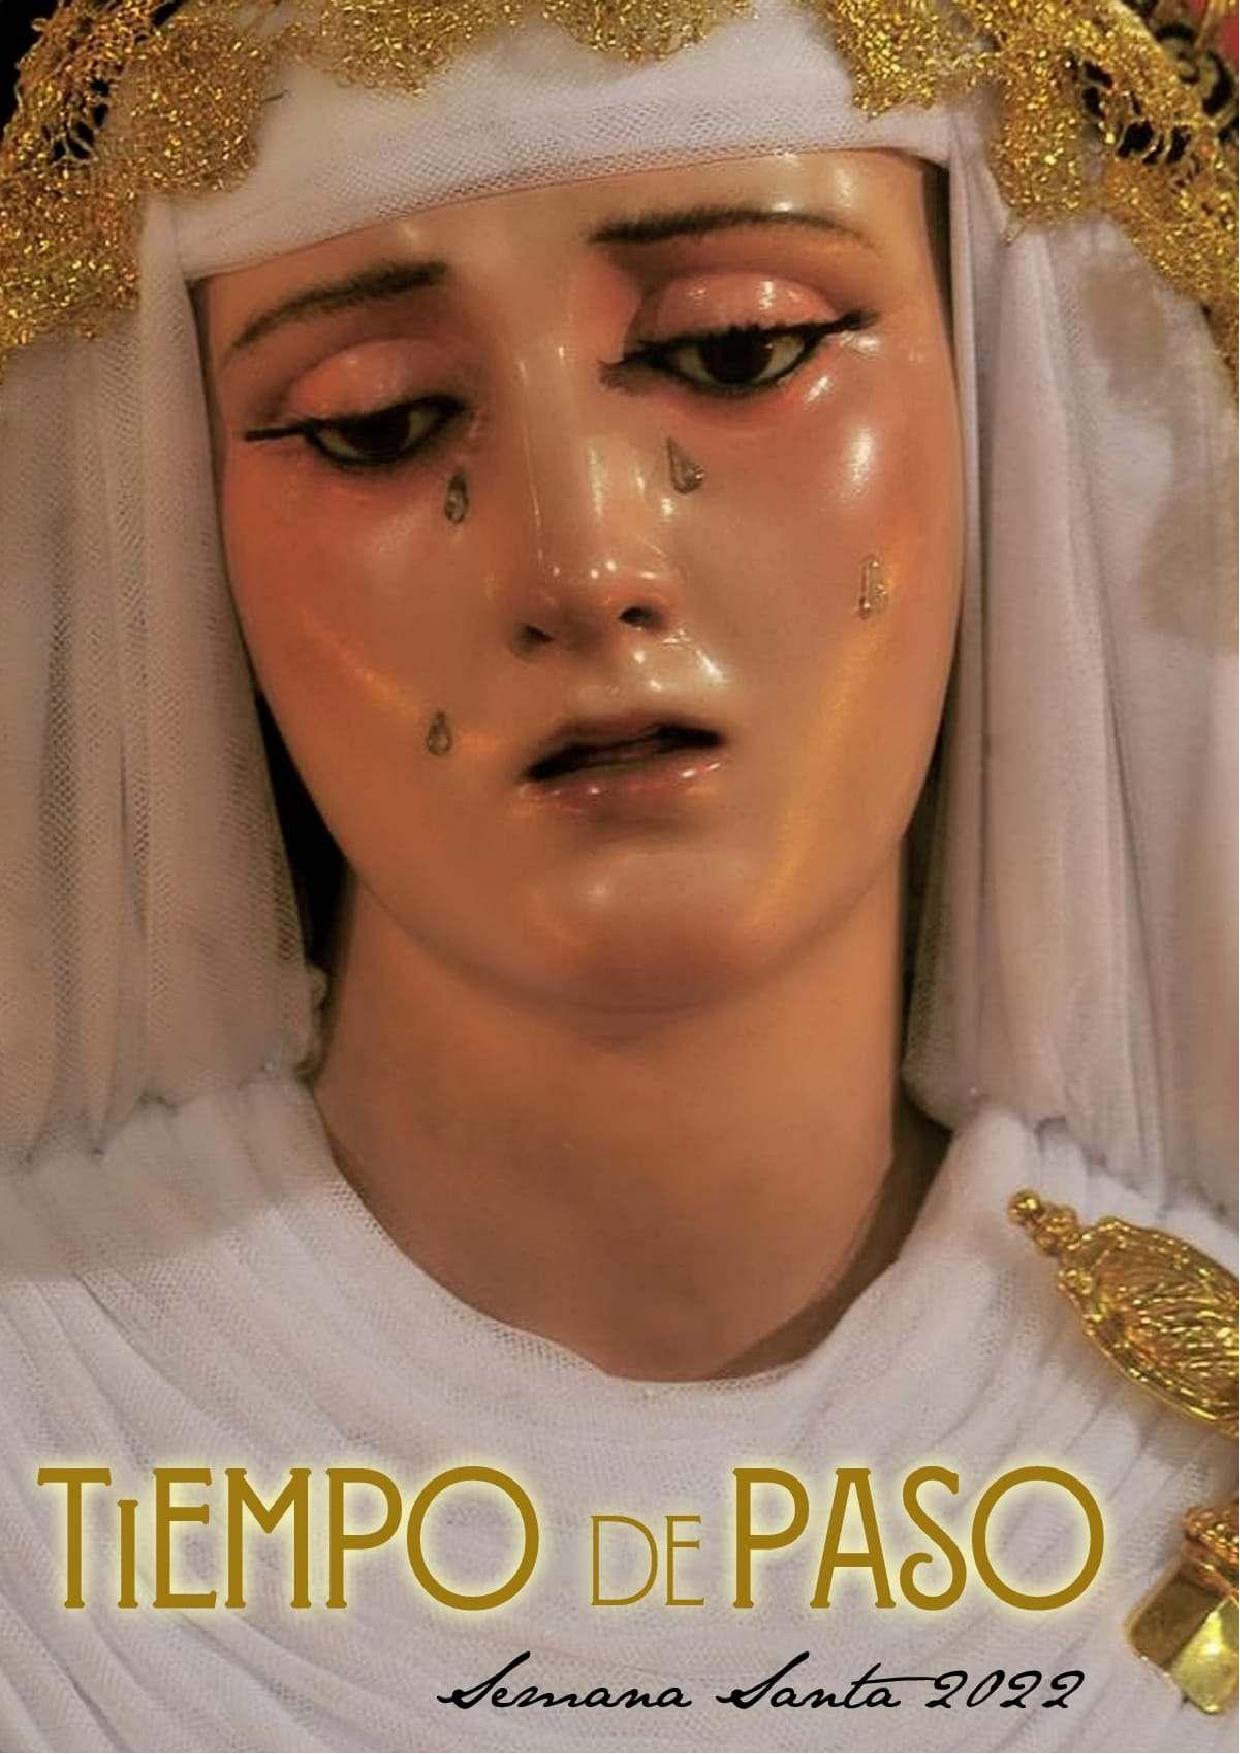 Programa de Mano "Tiempo de Paso". Semana Santa de Sevilla 2022